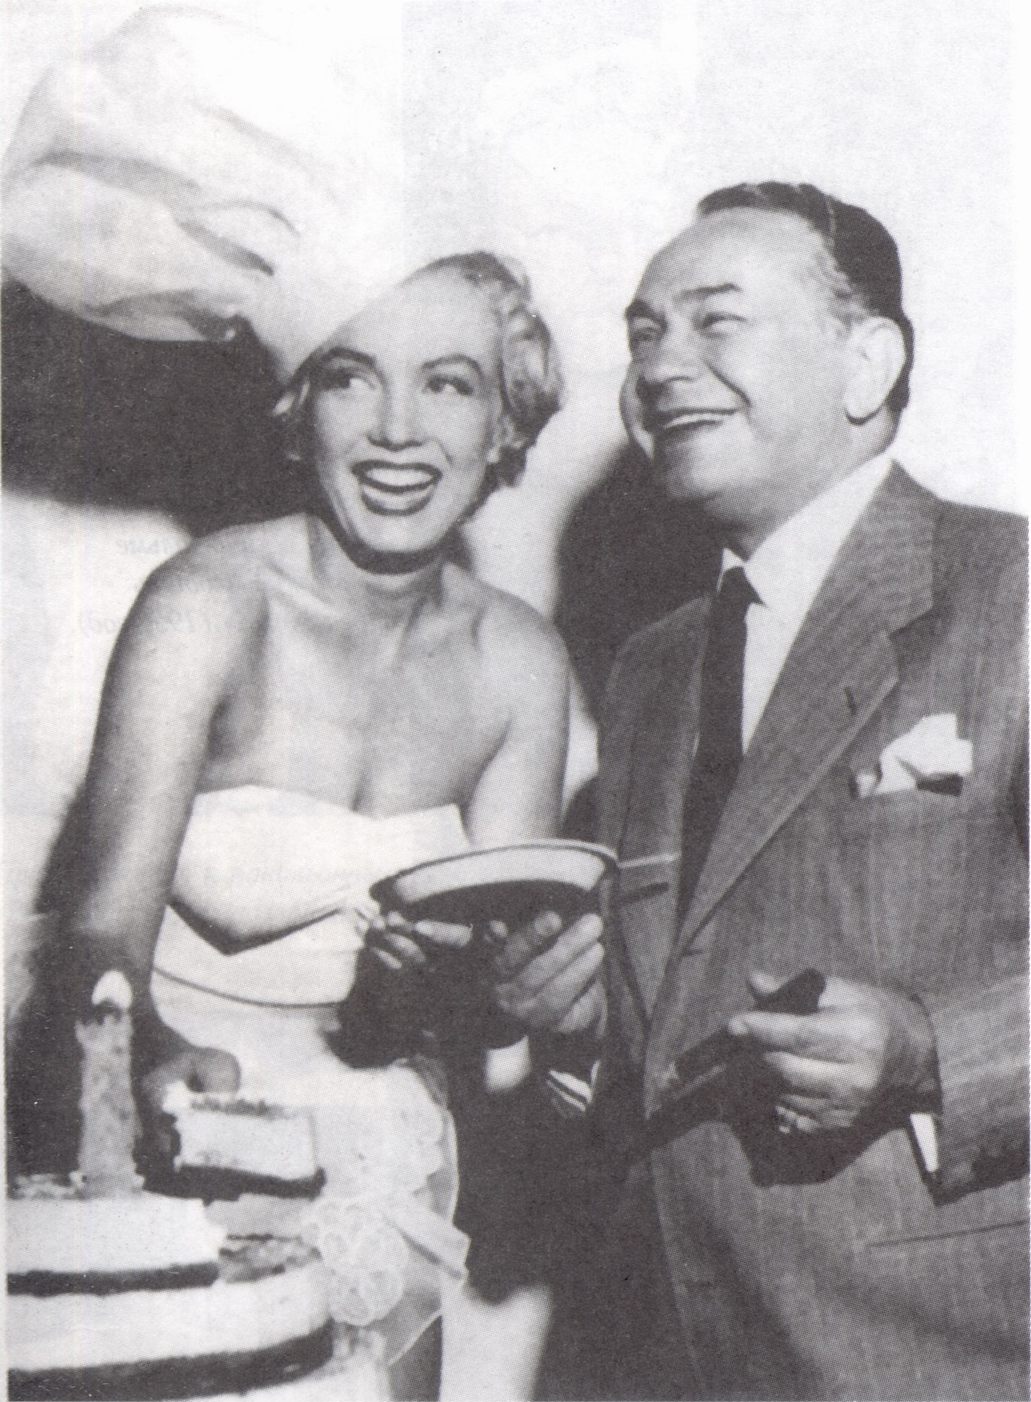 В качестве «Мисс сырника-1955», с Эдвардом Г. Робинсоном (из архива Микки Сонга)